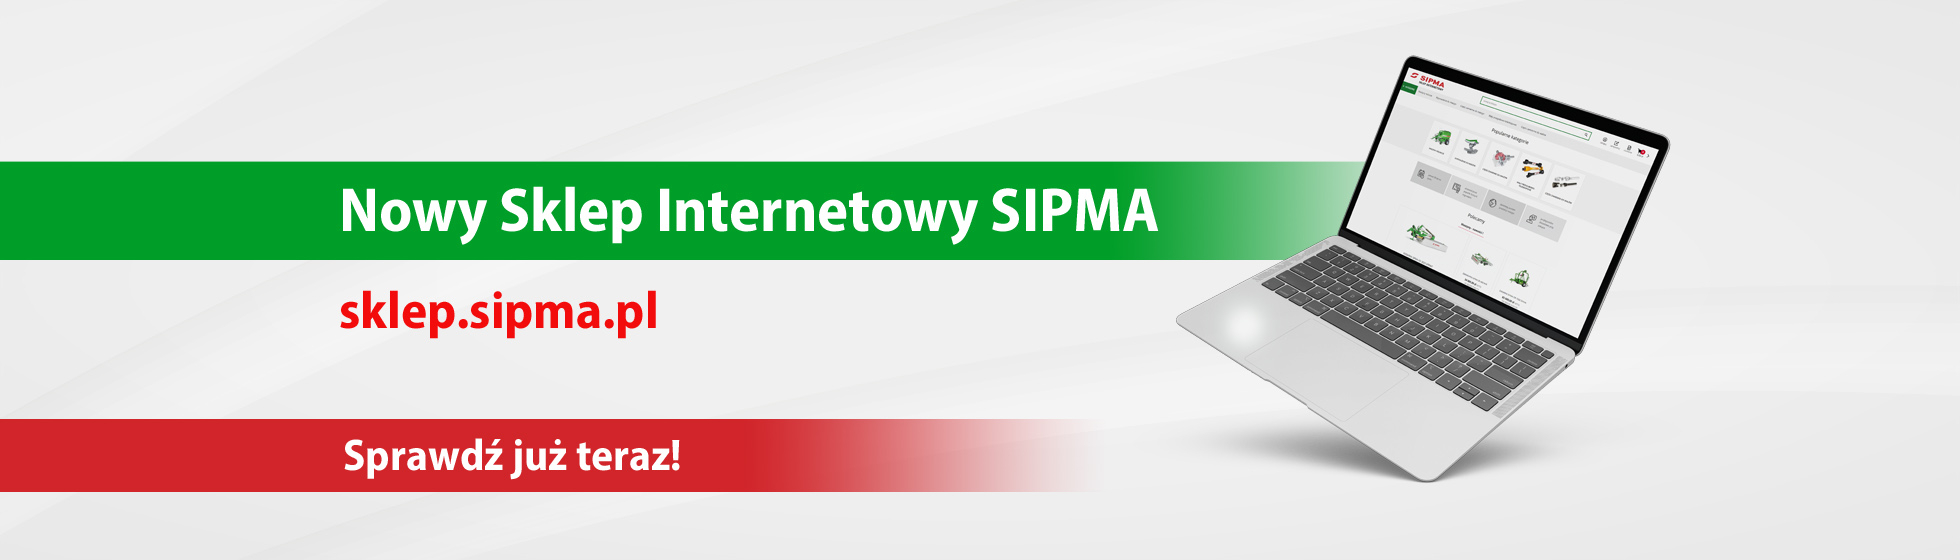 Nowy sklep internetowy SIPMA